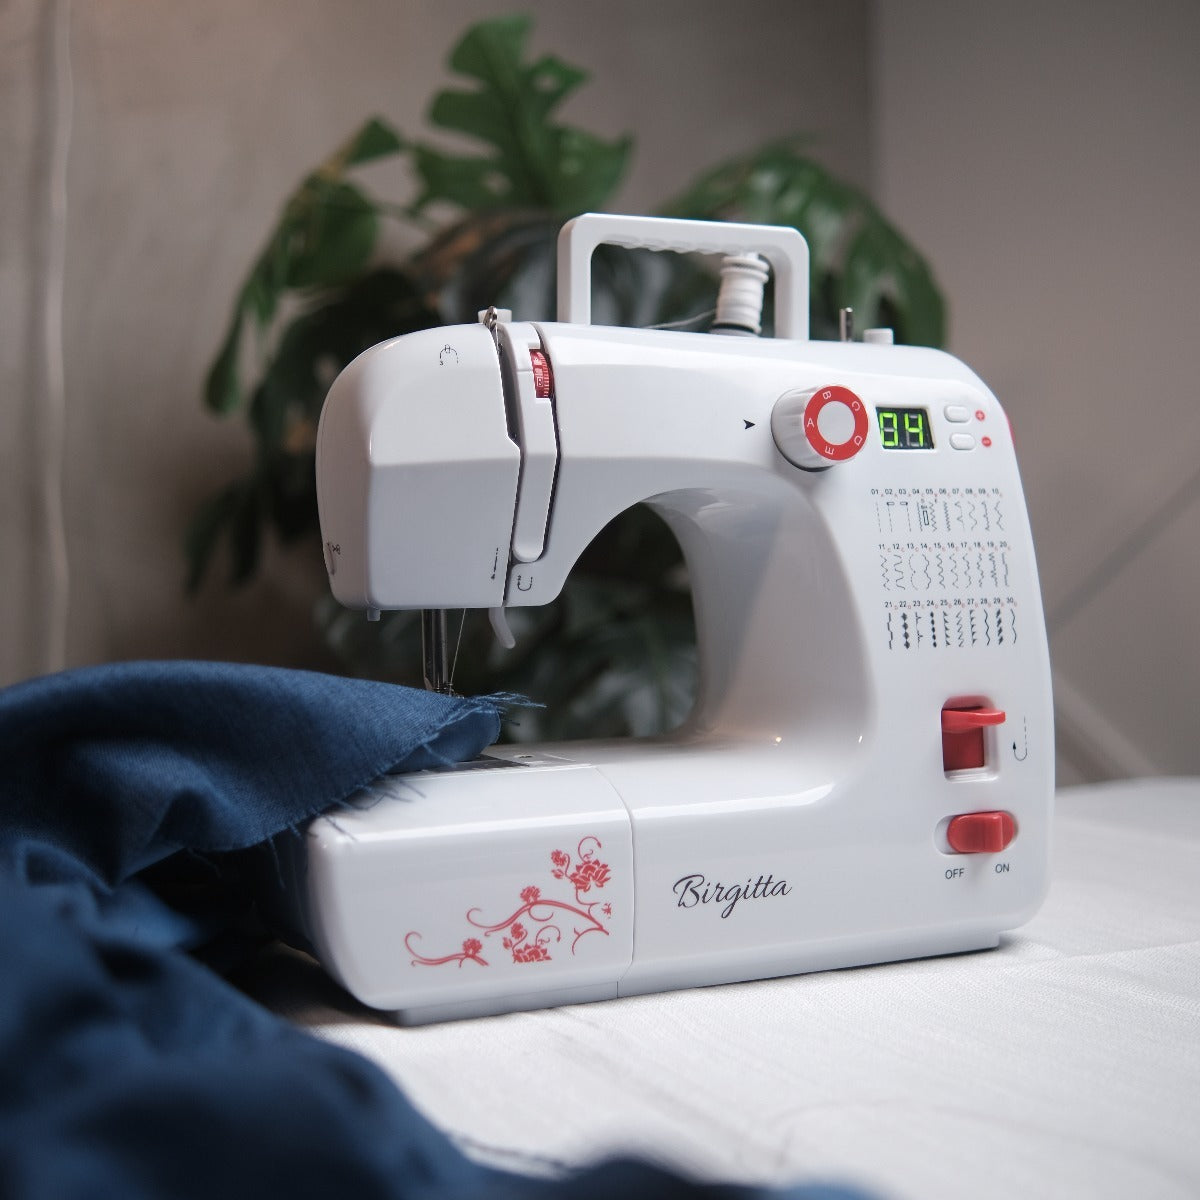 Birgitta Máquina de coser - Digital Deluxe